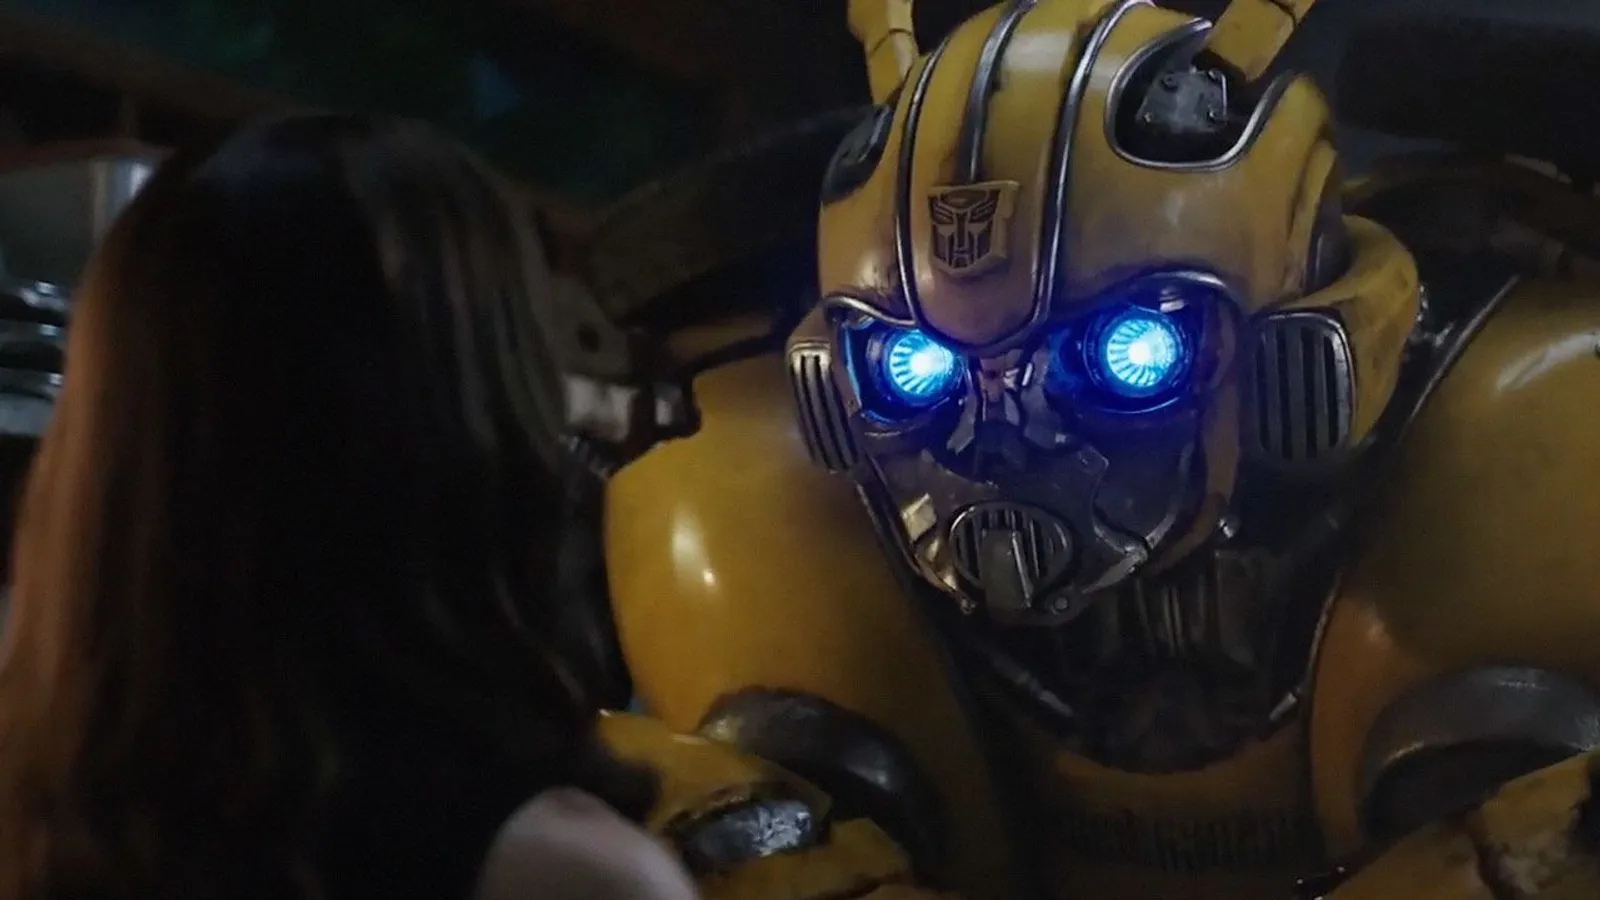 Ini 5 Fakta Film Bumblebee yang Menjadi Film Terbaik Transformers